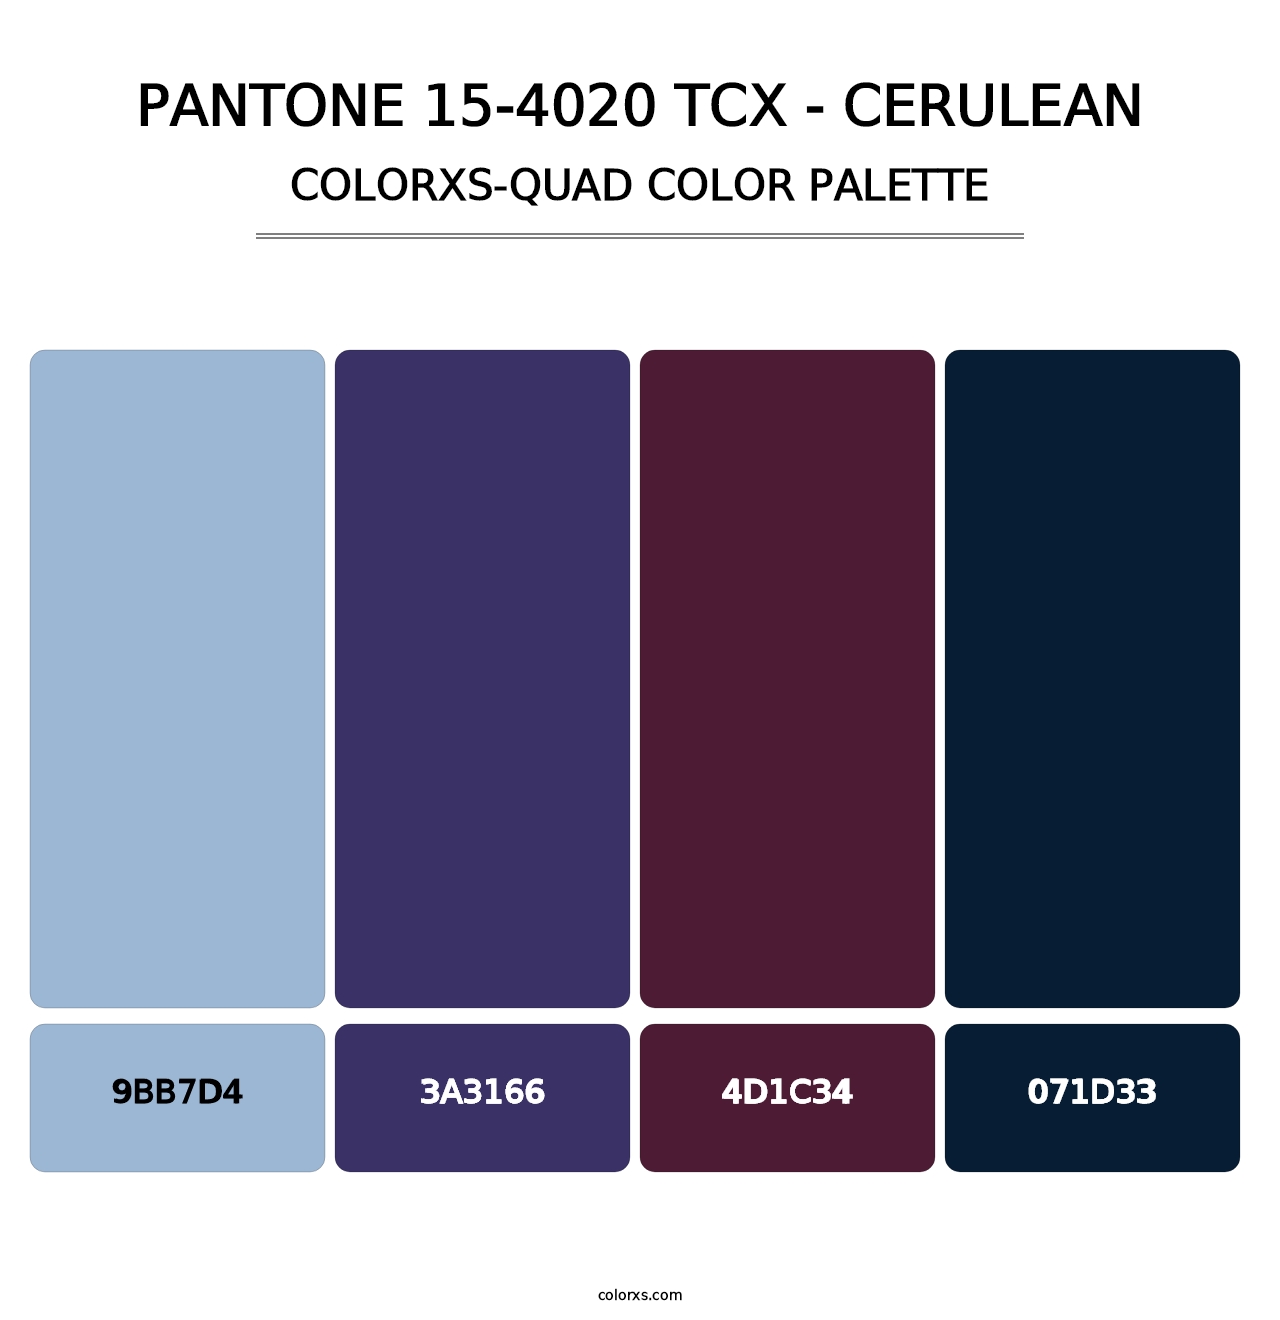 PANTONE 15-4020 TCX - Cerulean - Colorxs Quad Palette